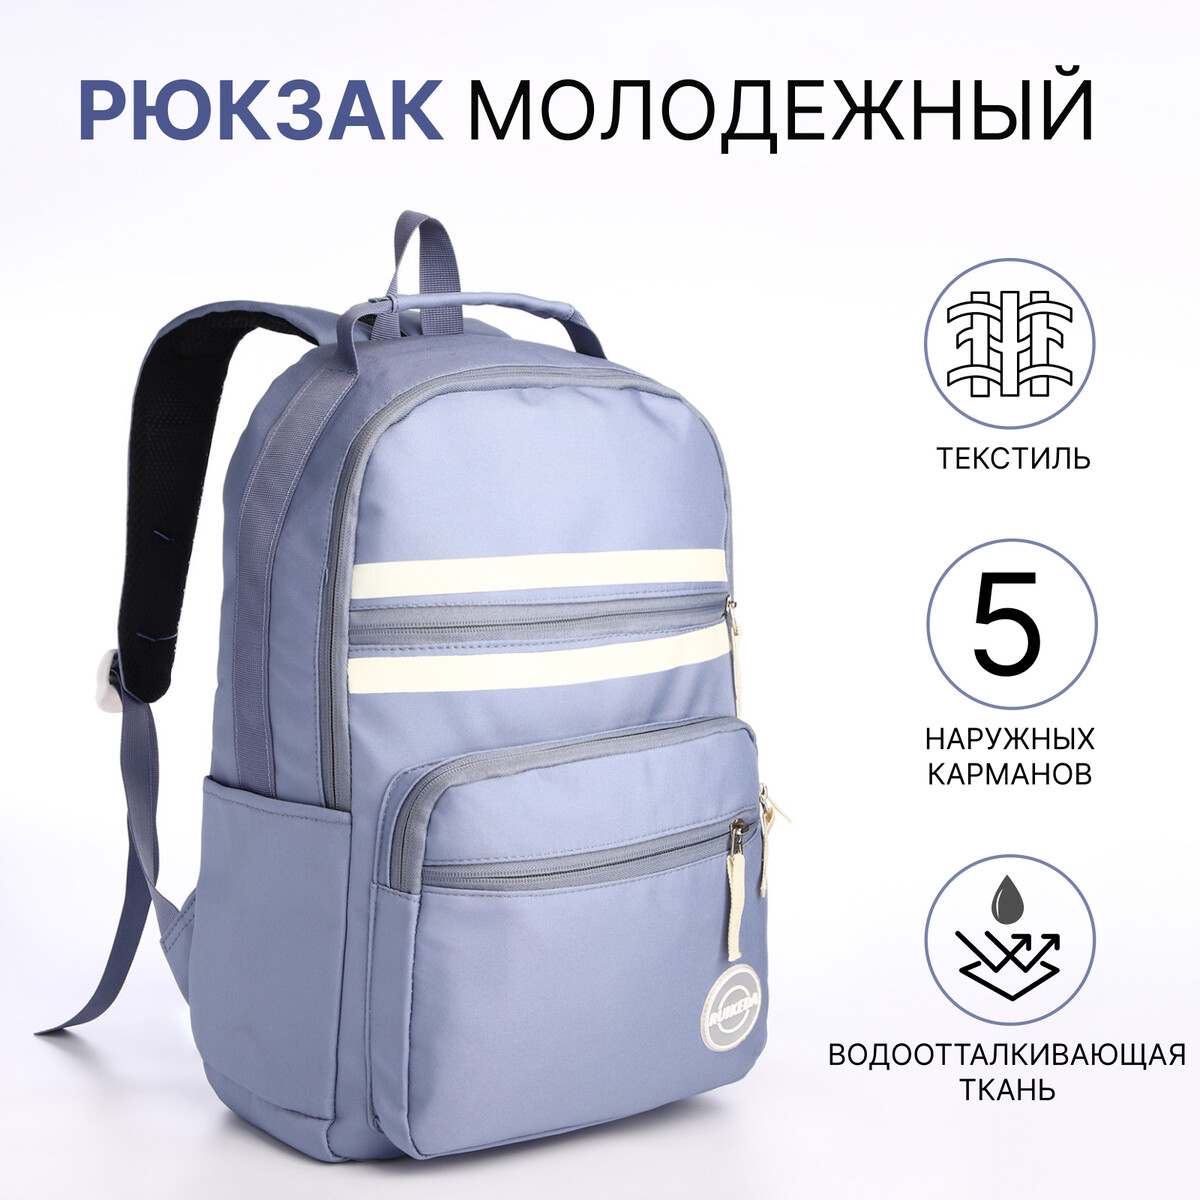 Рюкзак молодежный из текстиля на молнии, 5 карманов, цвет синий рюкзак молодежный из текстиля на молнии 5 карманов белый